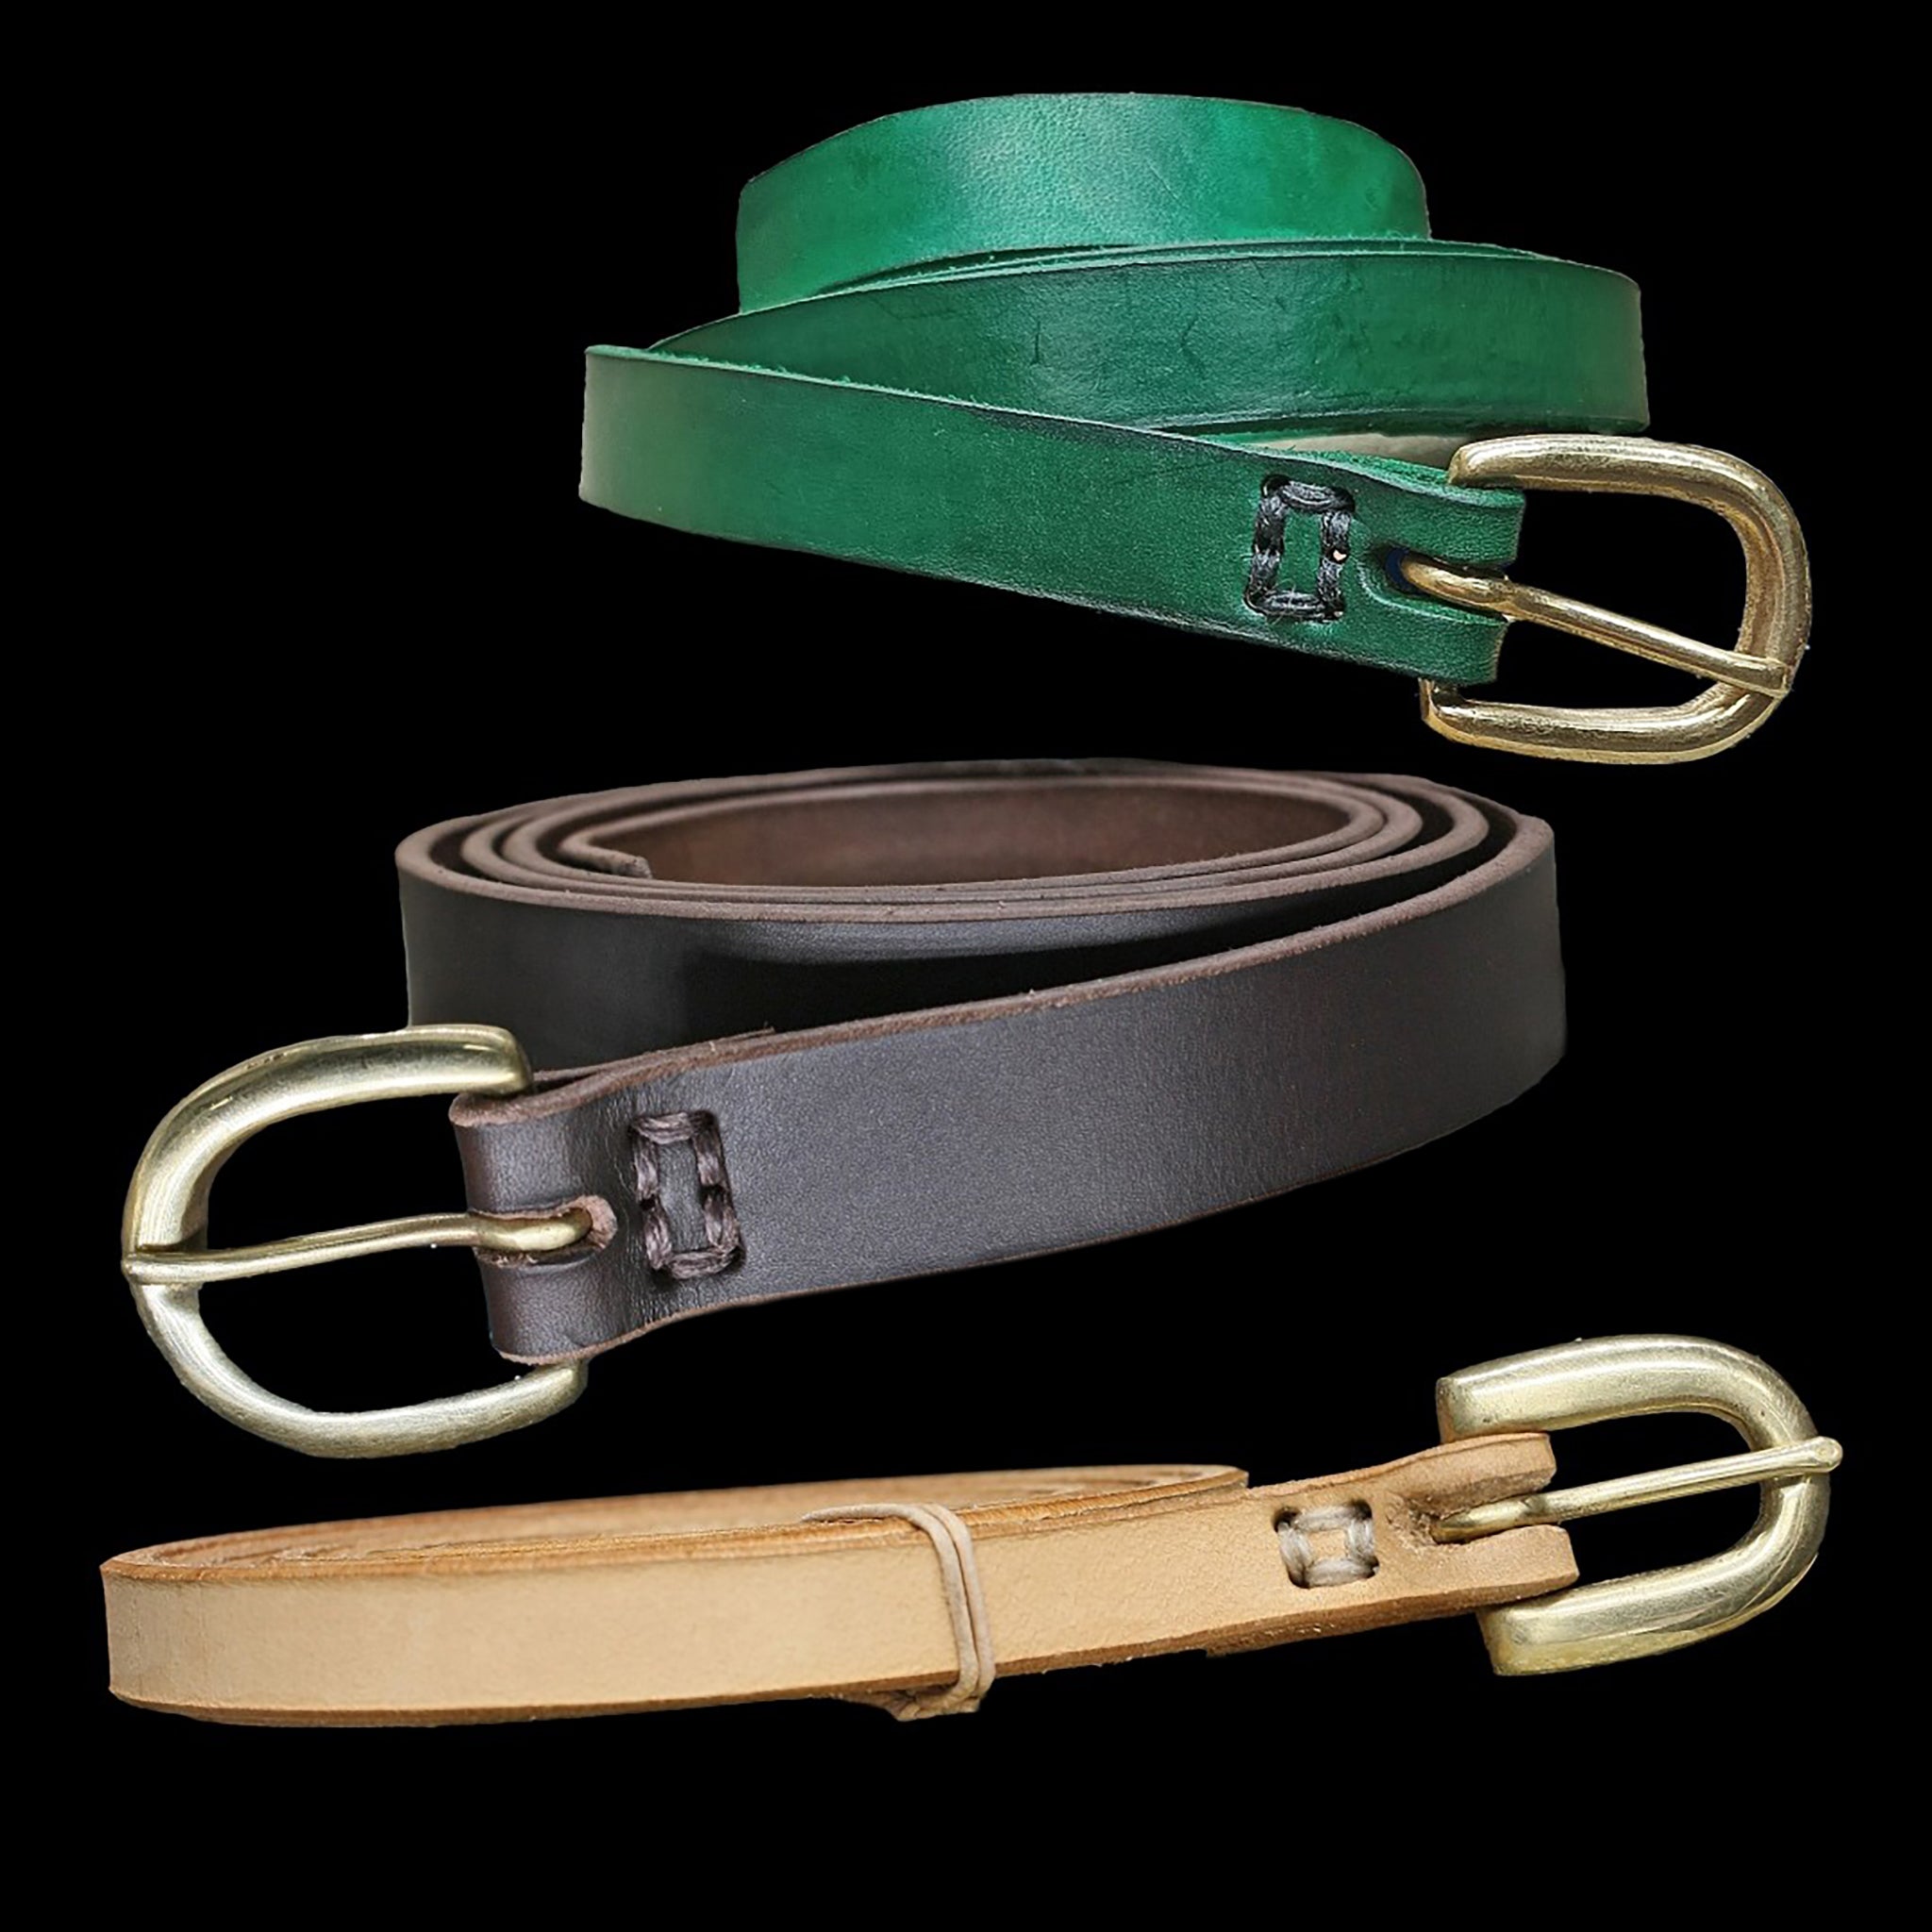 BKE Woven Leather Belt - Women's Belts in Dark Natural